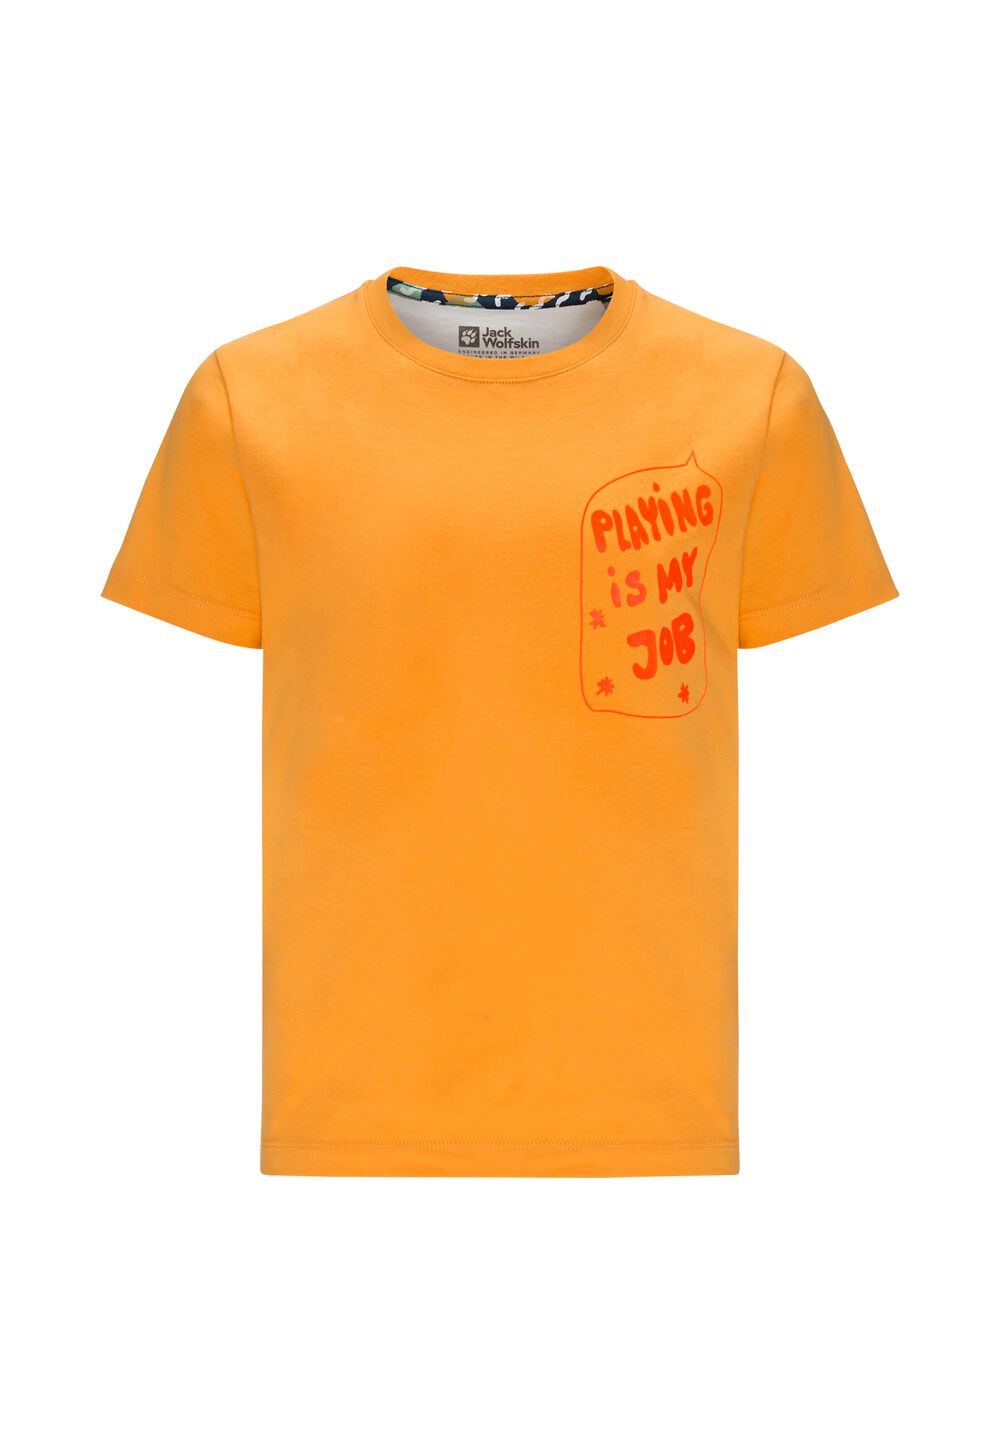 Jack Wolfskin Nachhaltiges T-Shirt Kinder Villi T-Shirt Kids 92 braun orange pop von Jack Wolfskin